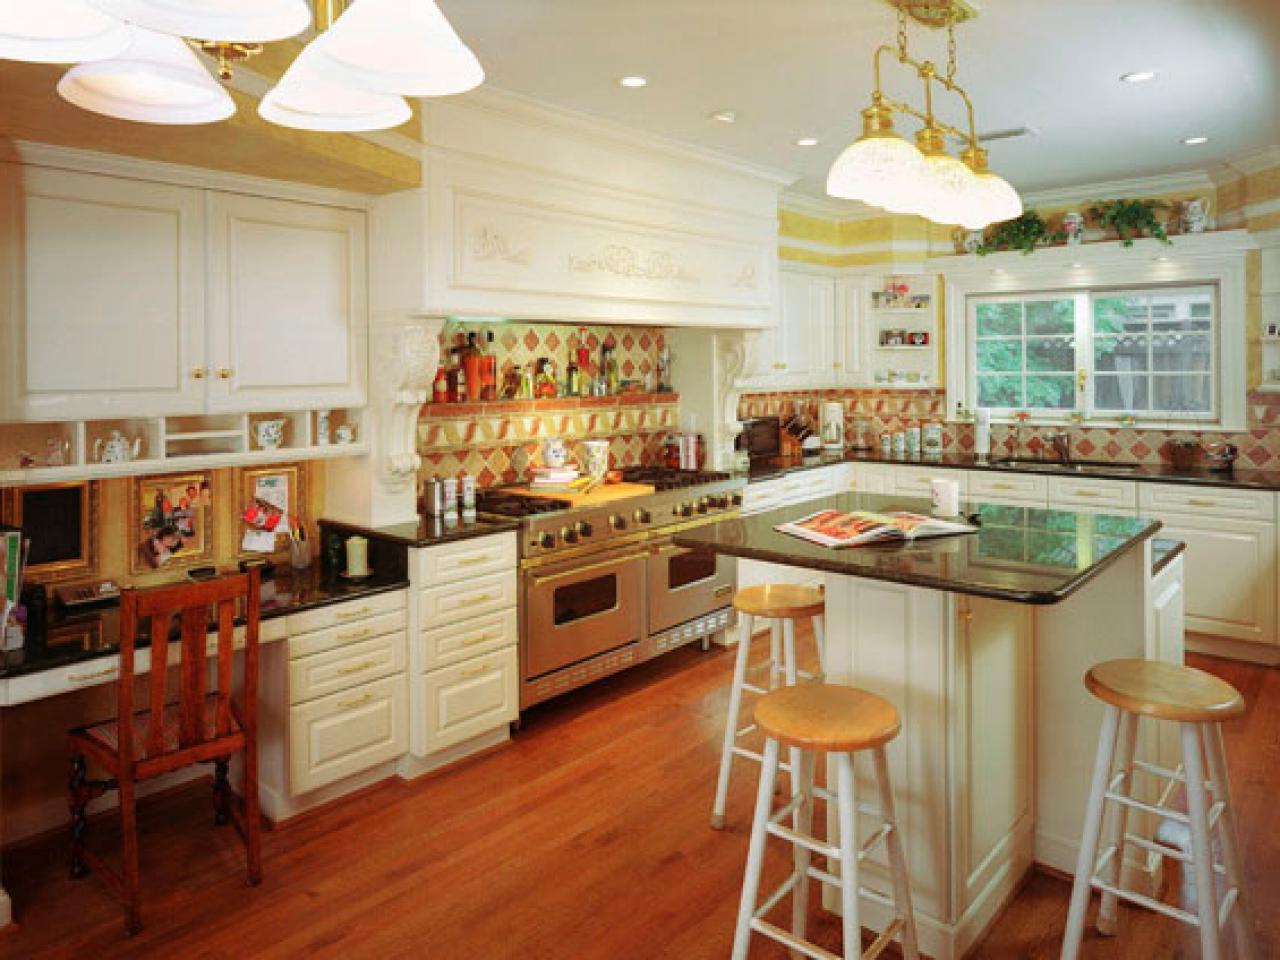 Ideas For Kitchen Remodeling Floor Plans Free Design Online